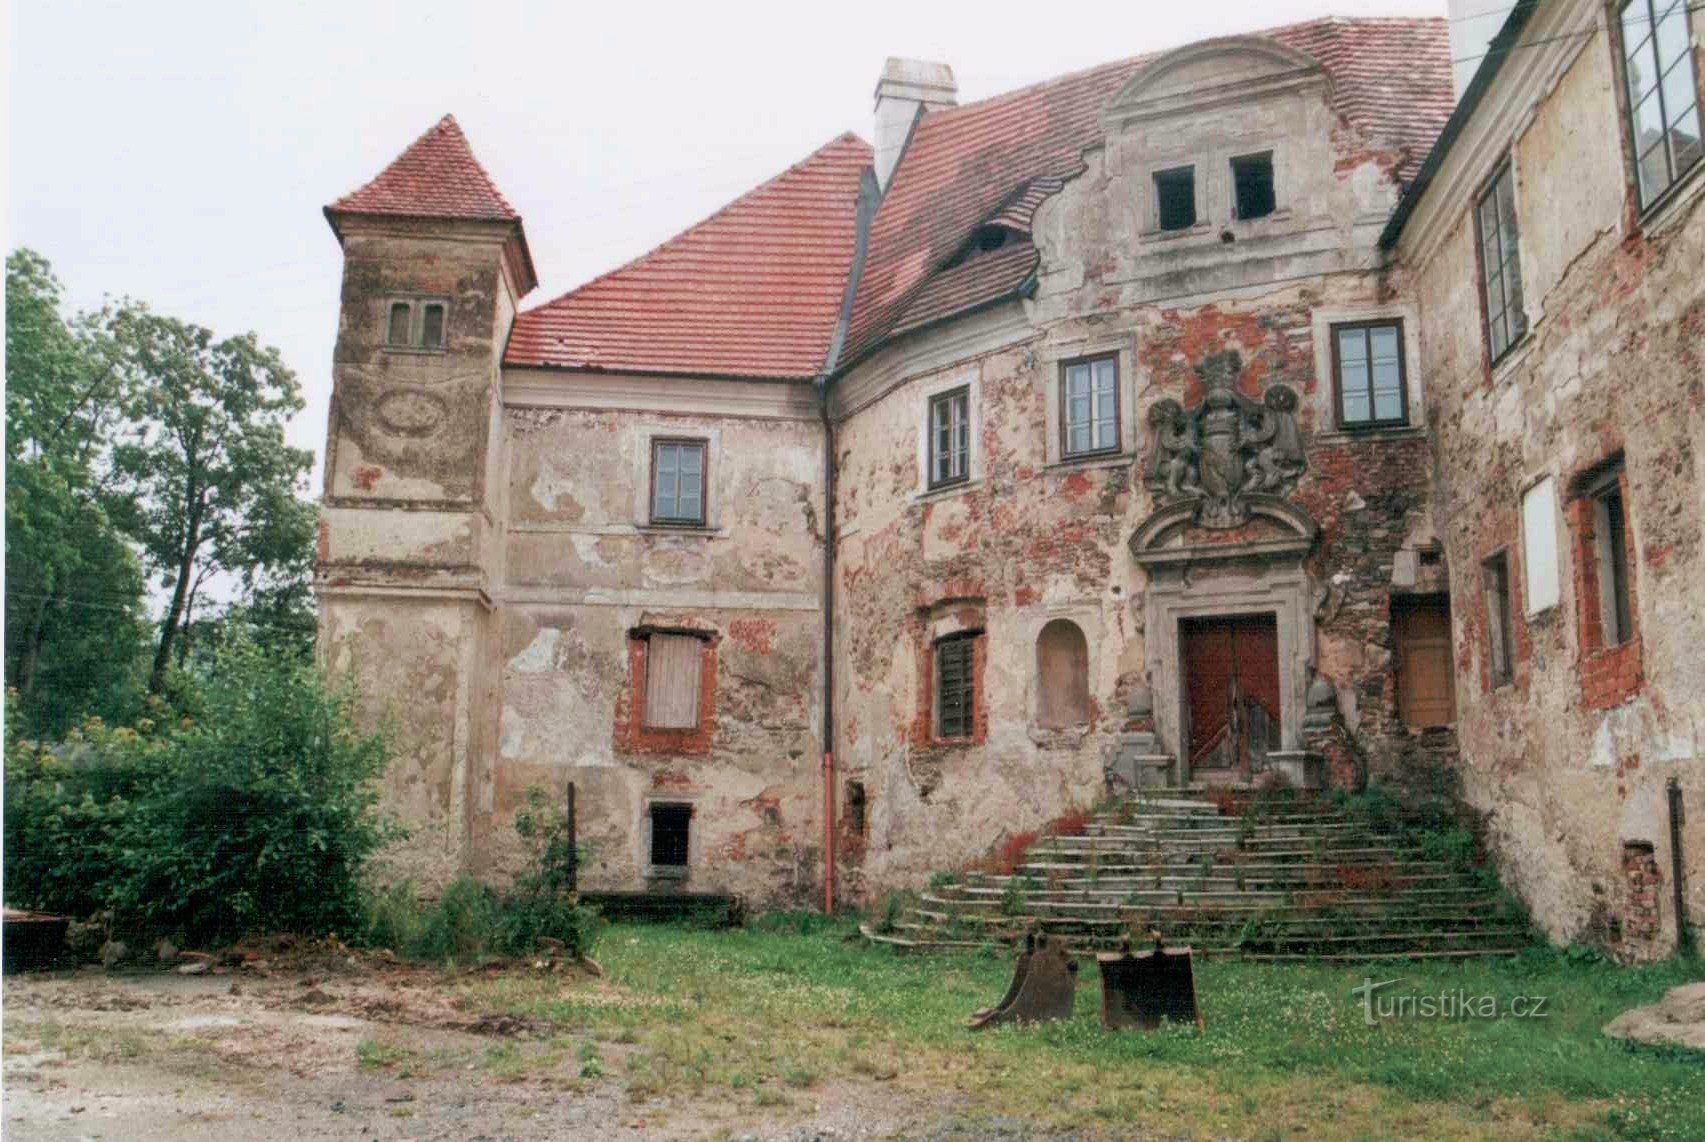 κάστρο στο Pobežovice, ελπίζω ότι αυτό δεν ισχύει πλέον